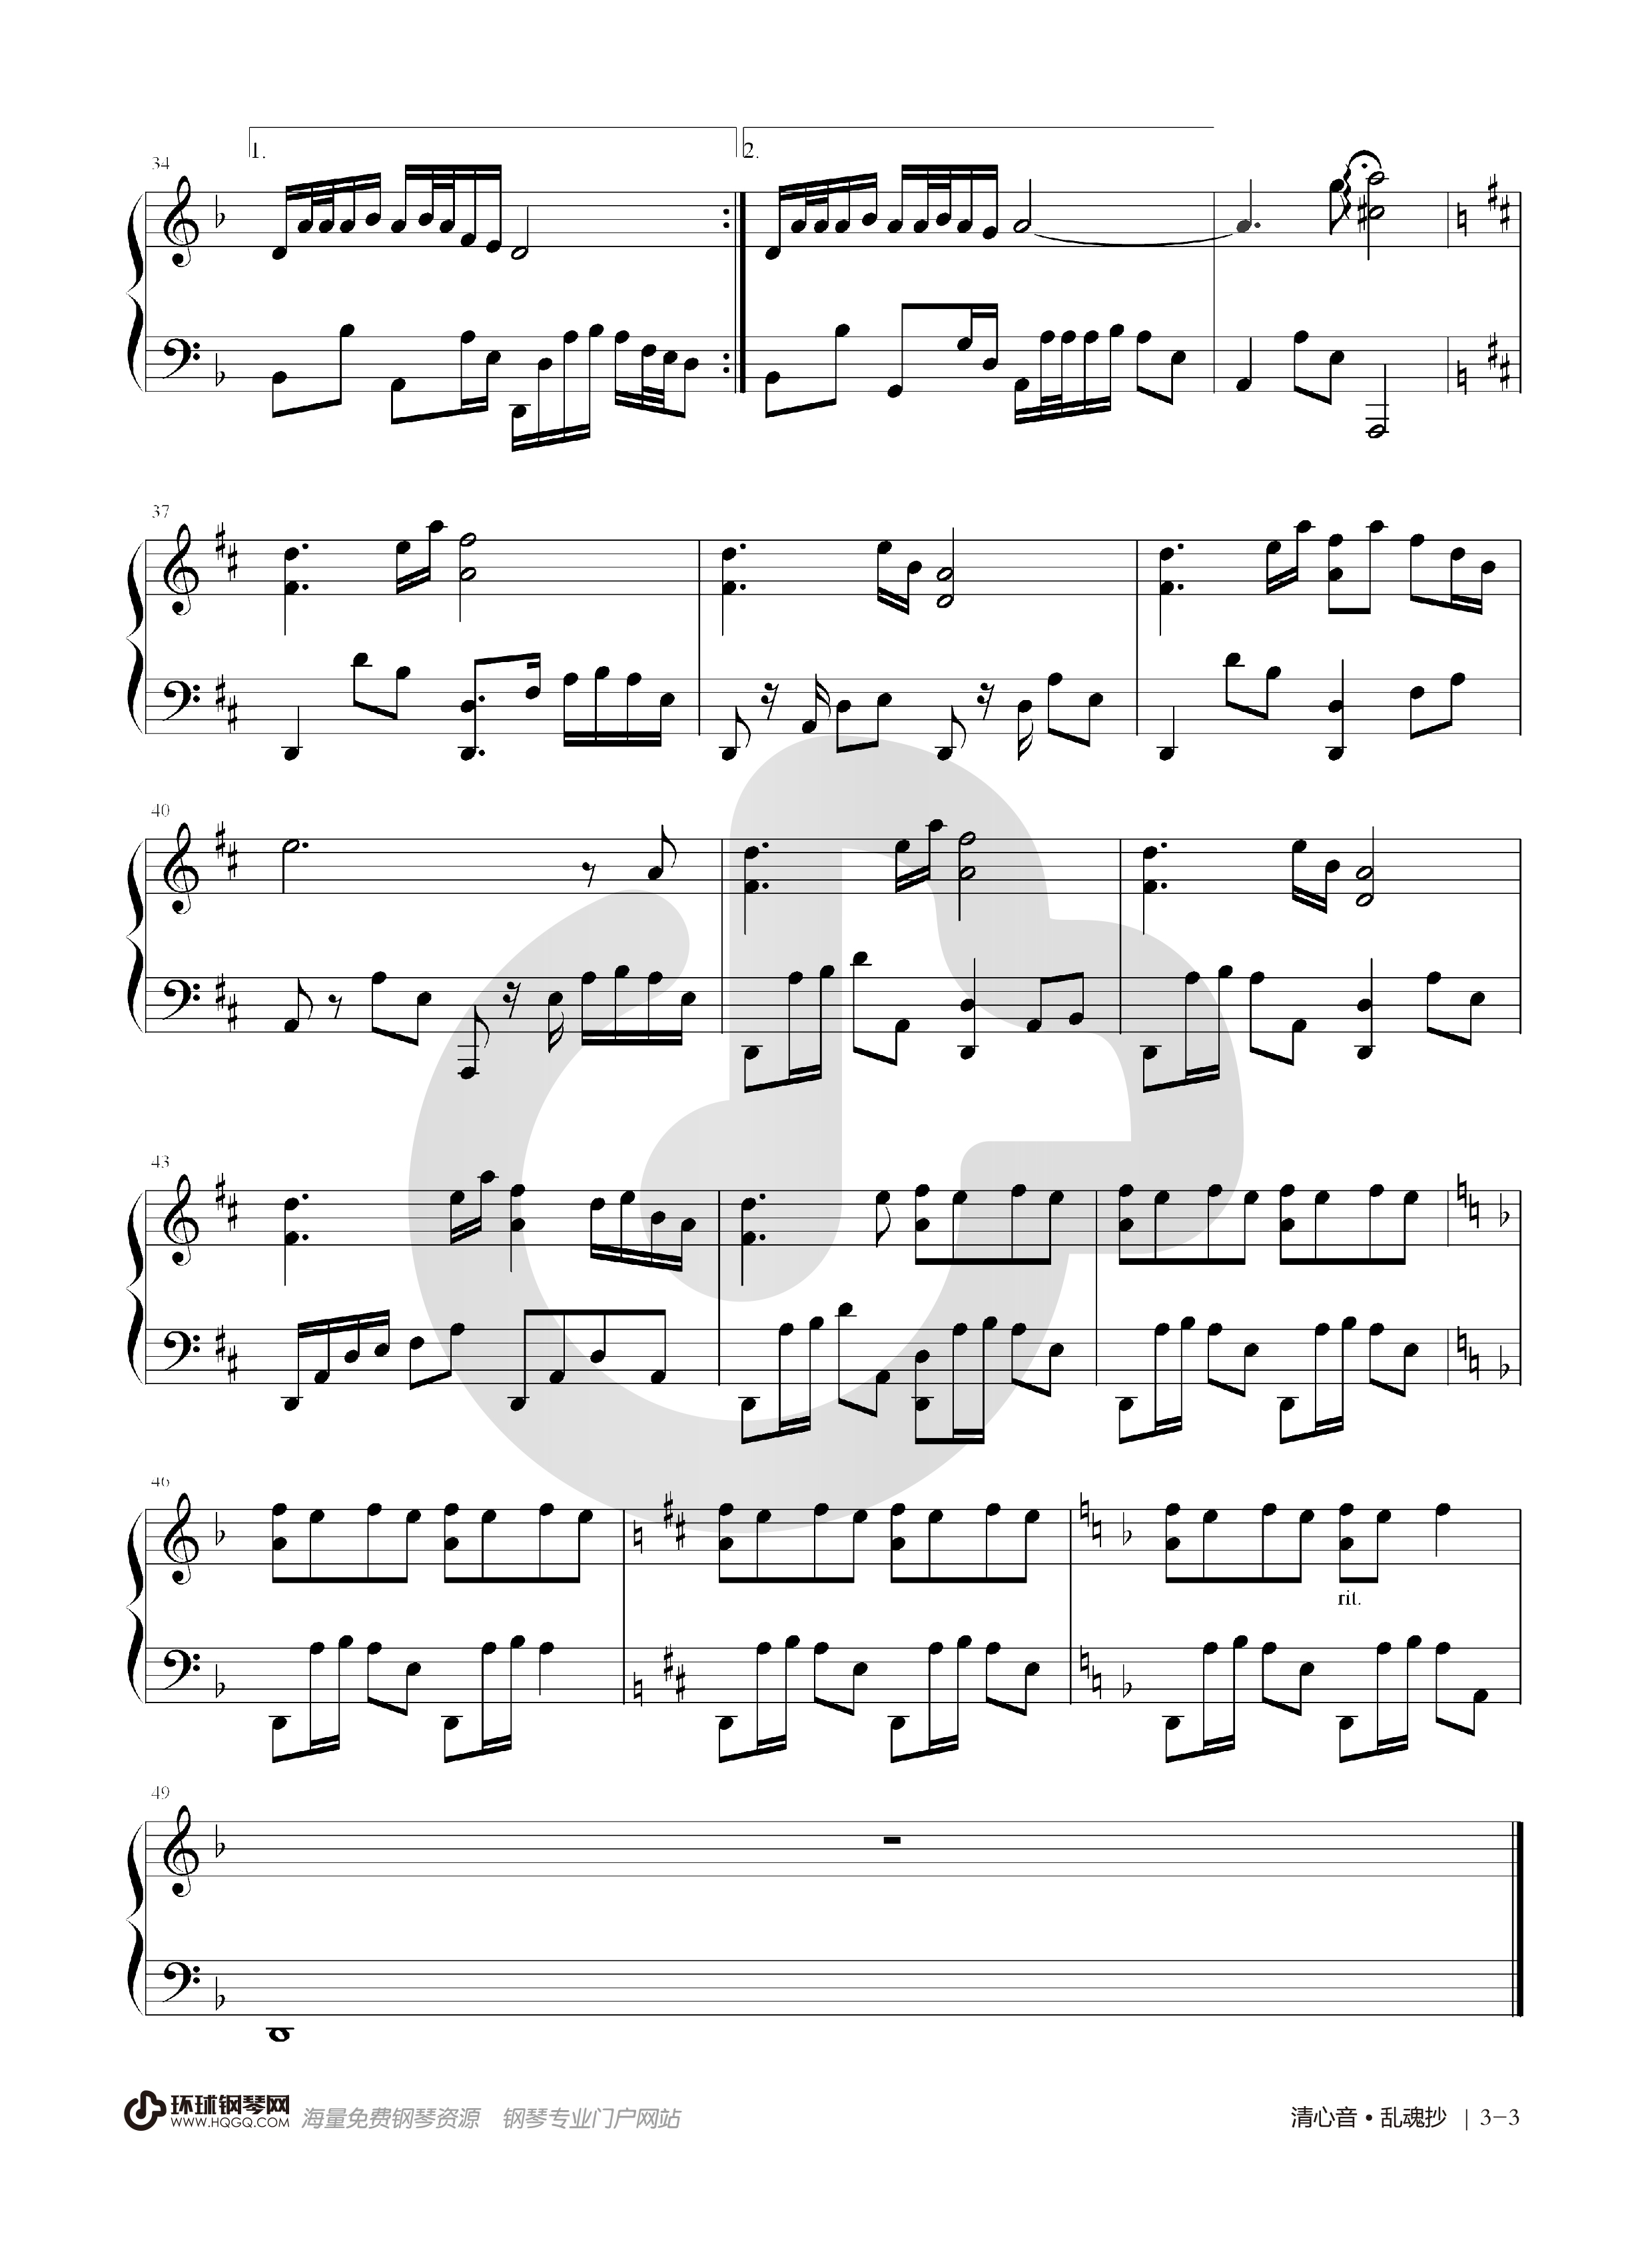 乱魄抄钢琴曲谱数字图片